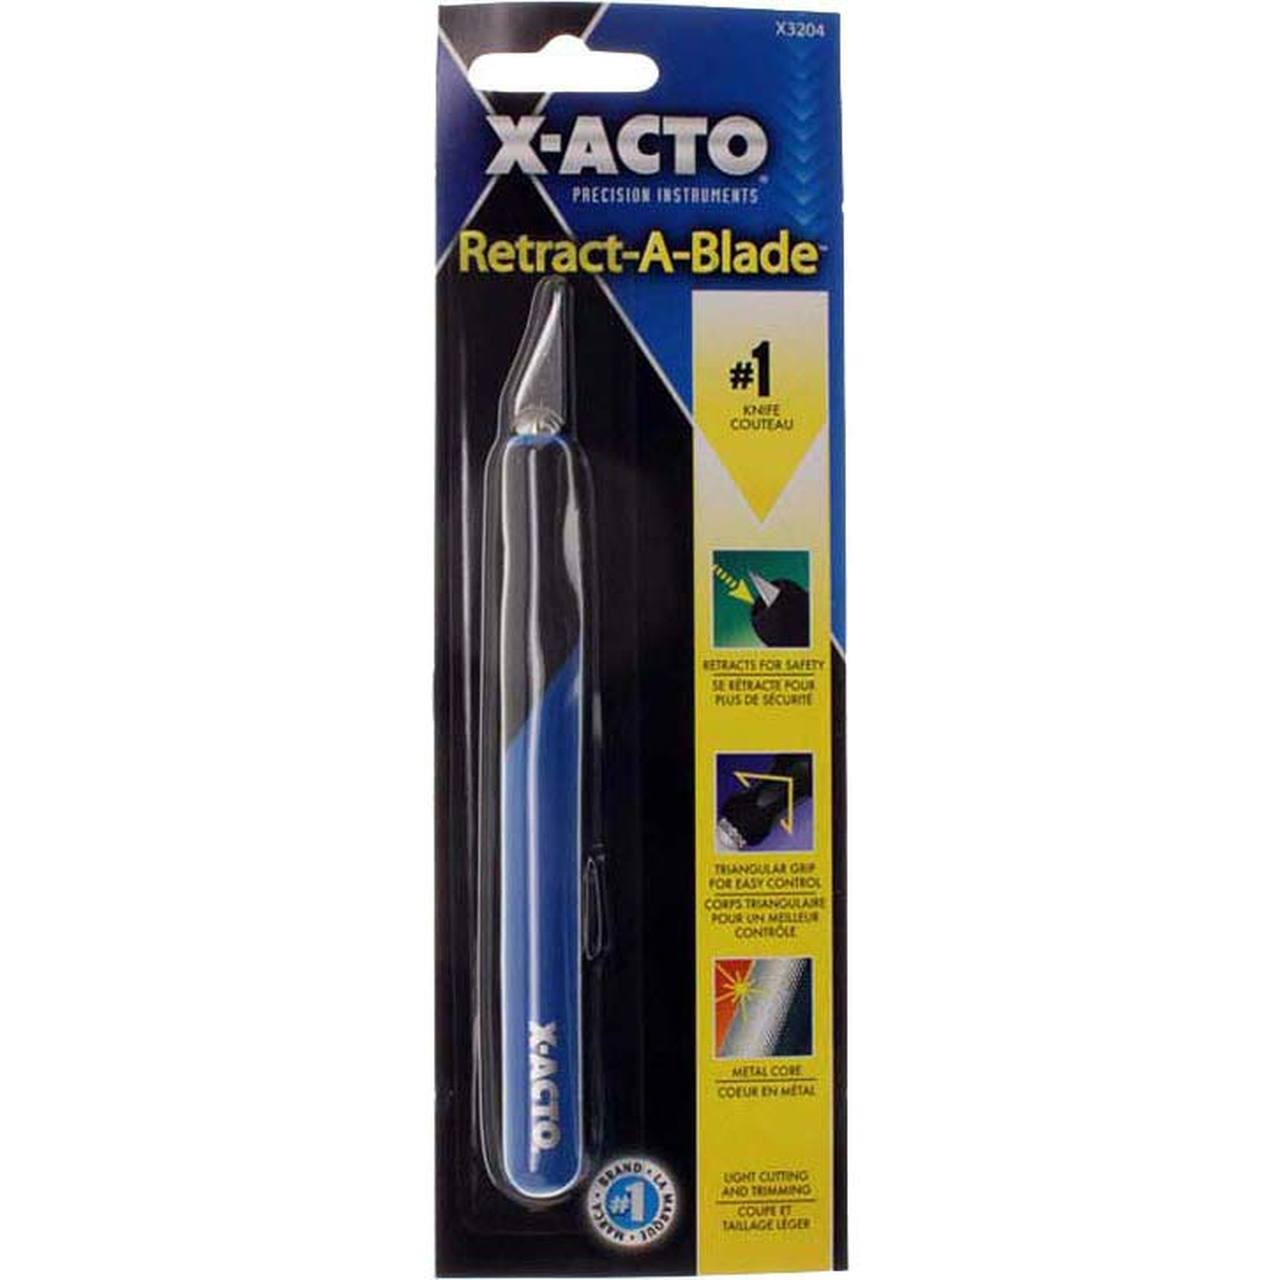 Xacto Retractablade (X3204)